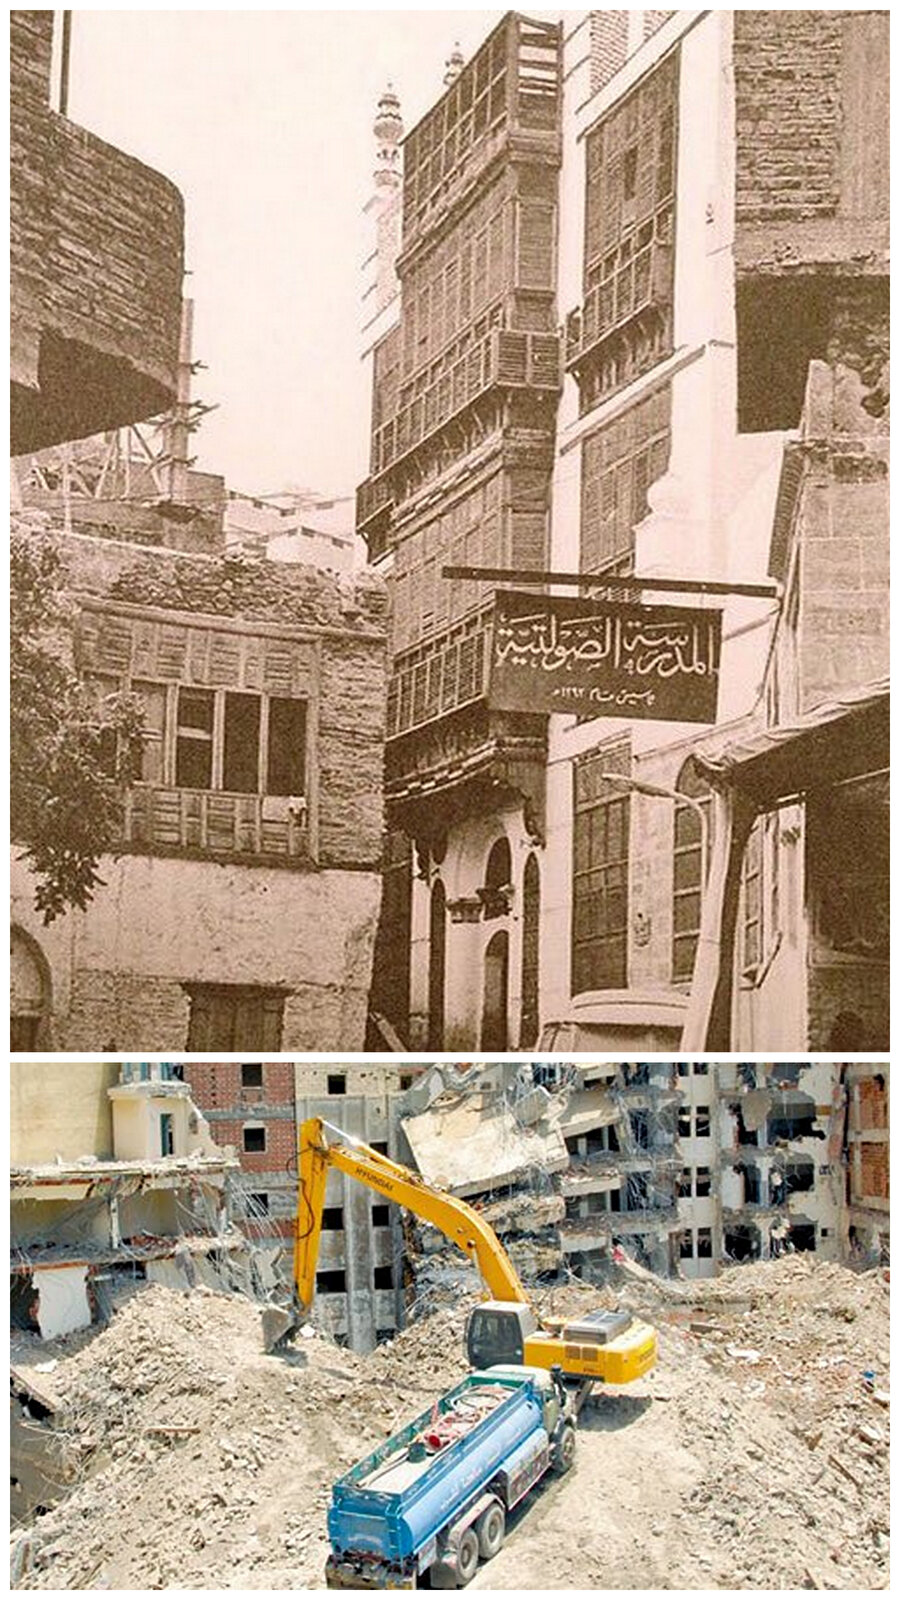 Üstteki fotoğraf Medrese-i Savletiyye’nin ayakta olduğu, alttaki fotoğraf ise Harem’i genişletme projeleri kapsamında bu yapının yok edildiği zamanı resmediyor.